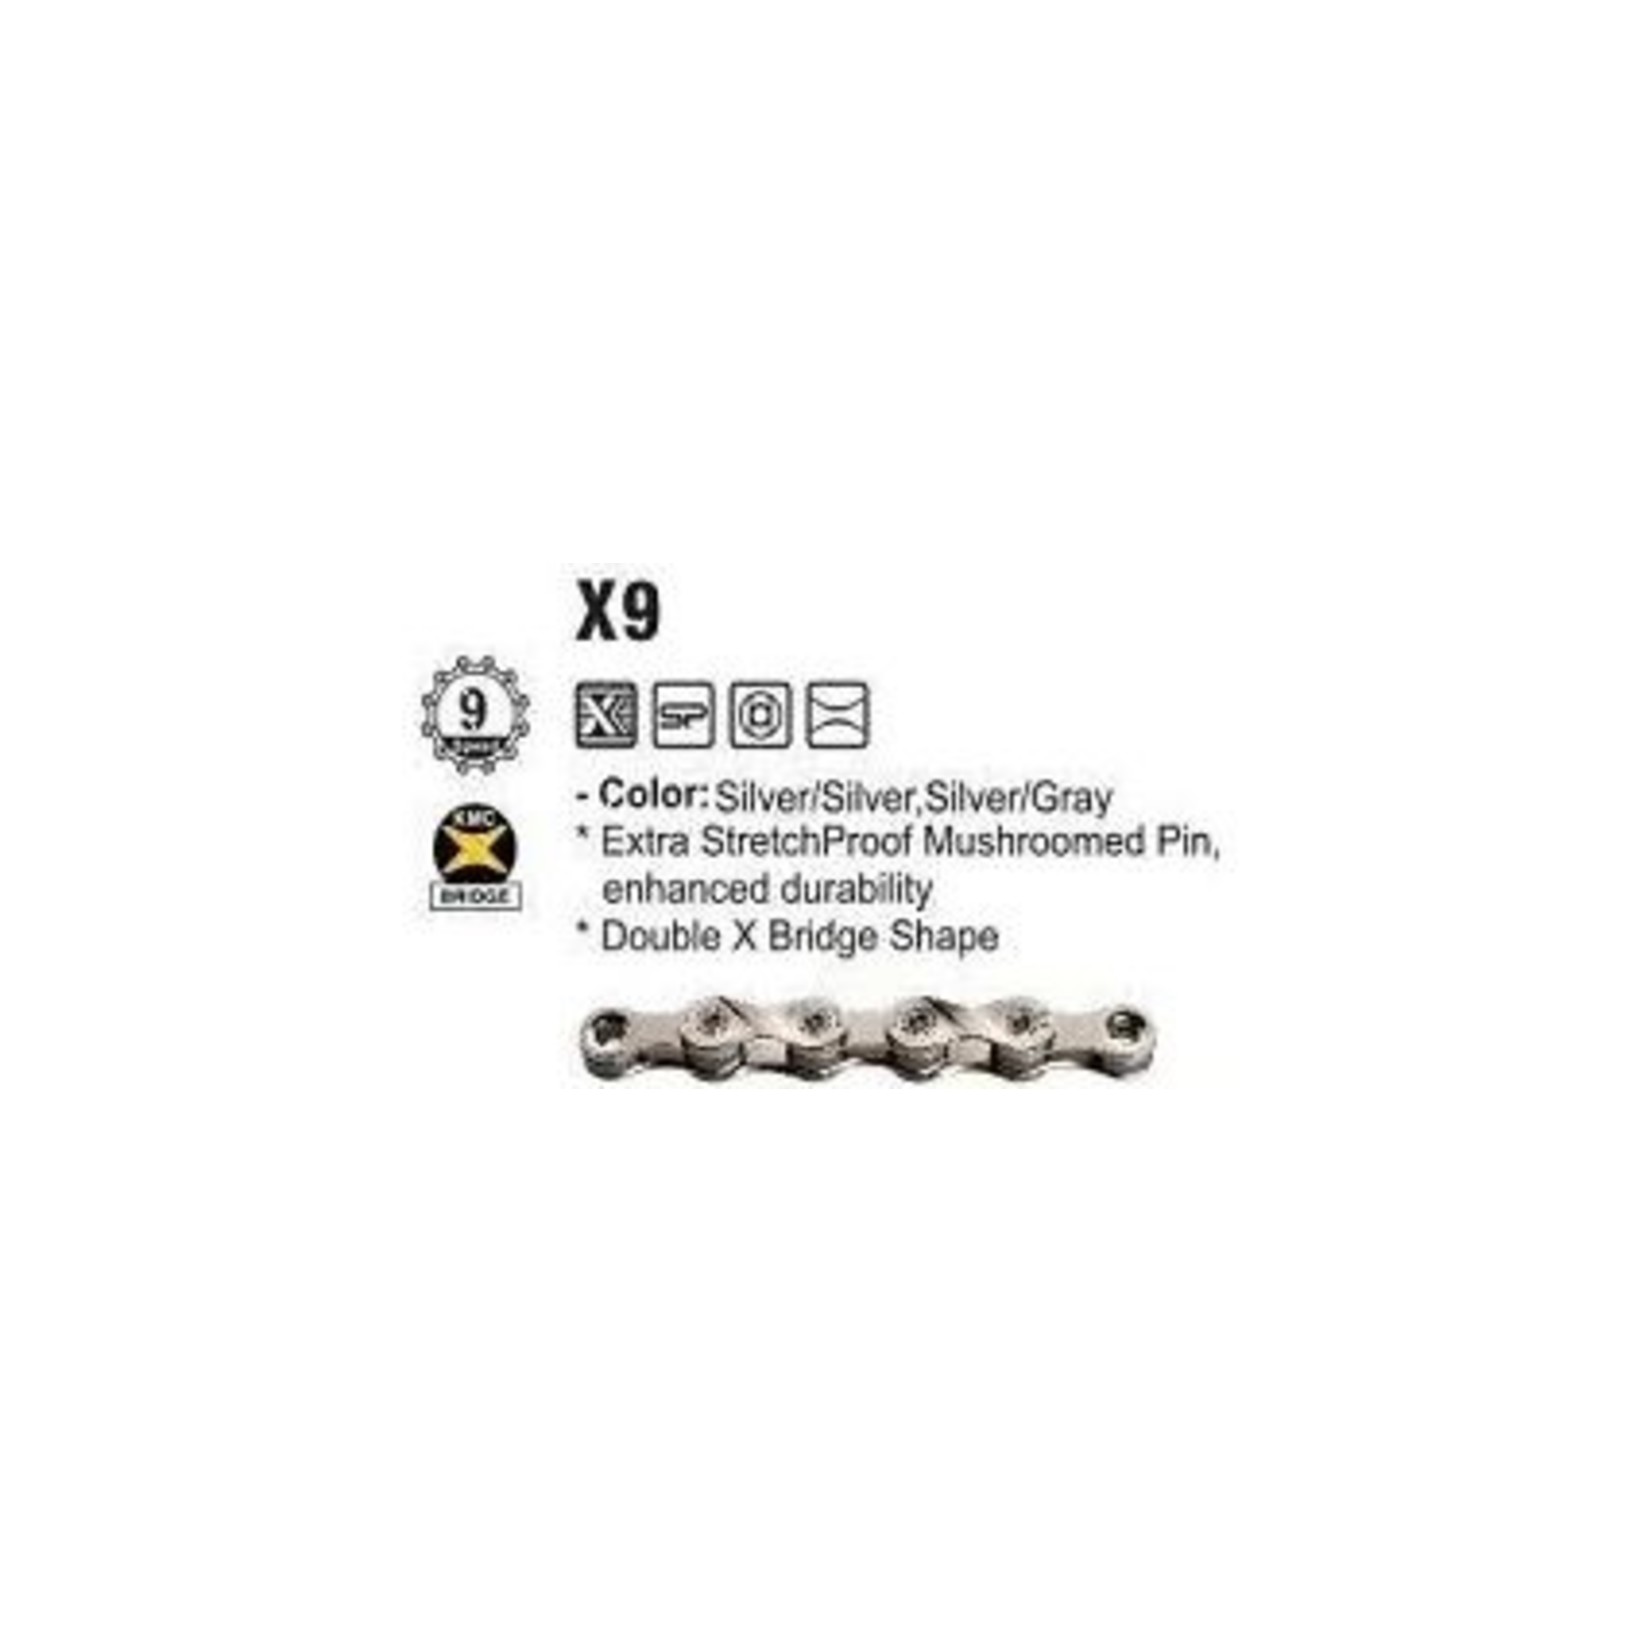 KMC KMC Bike Chain - X9 - 9 Speed - 1/2" X 11/128" X 116 Links - Silver/Silver